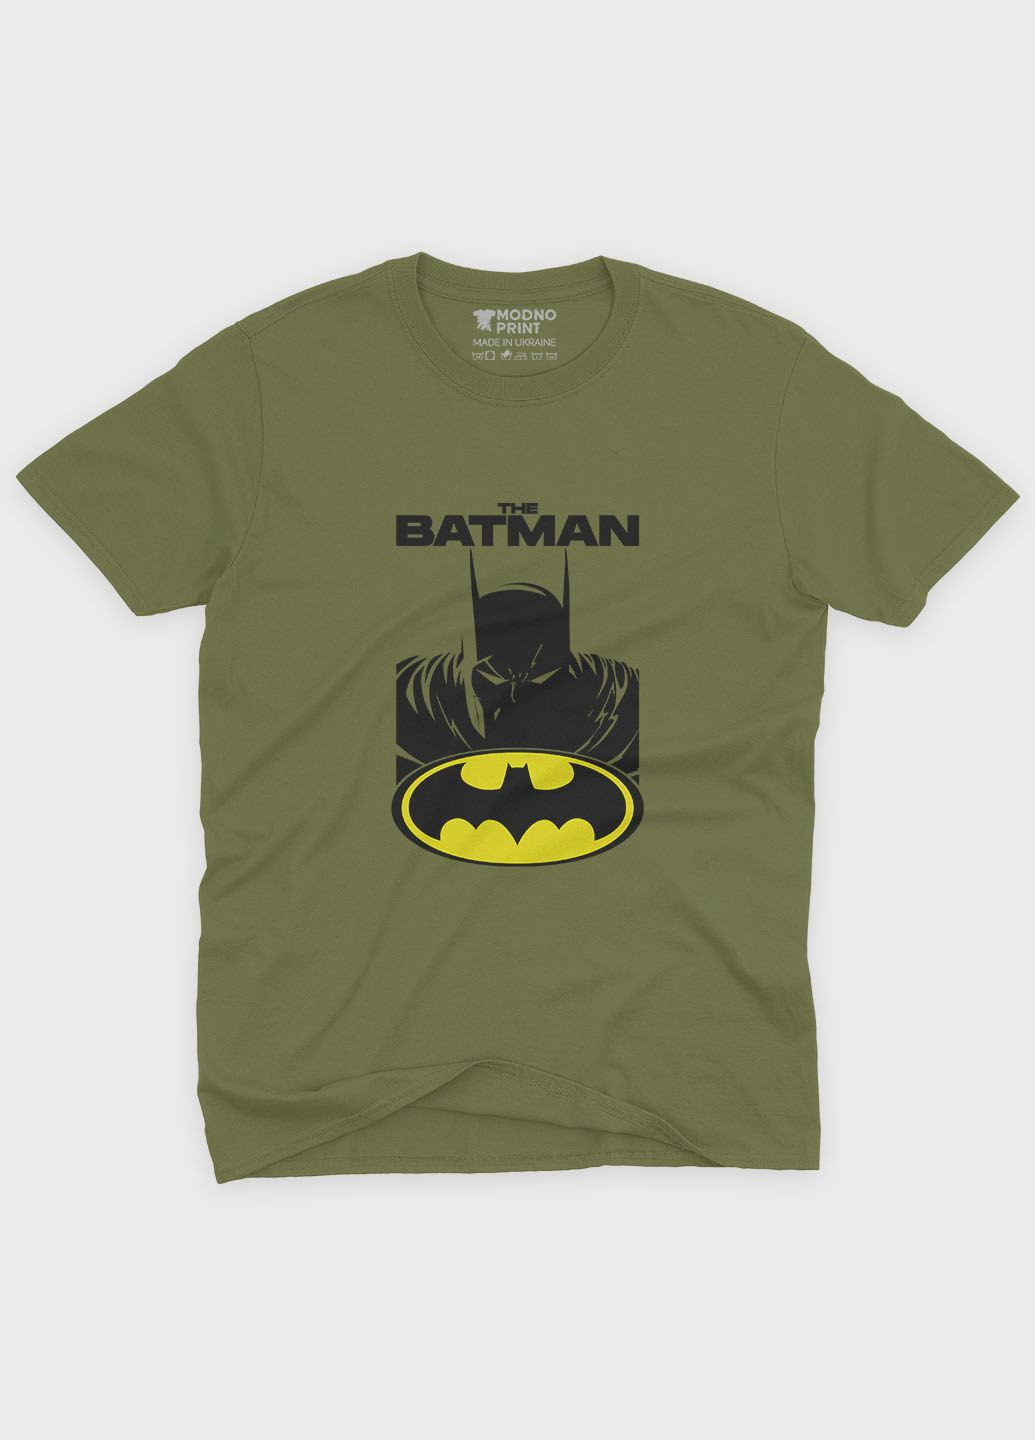 Хаки (оливковая) летняя мужская футболка с принтом супергероя - бэтмен (ts001-1-hgr-006-003-019-f) Modno